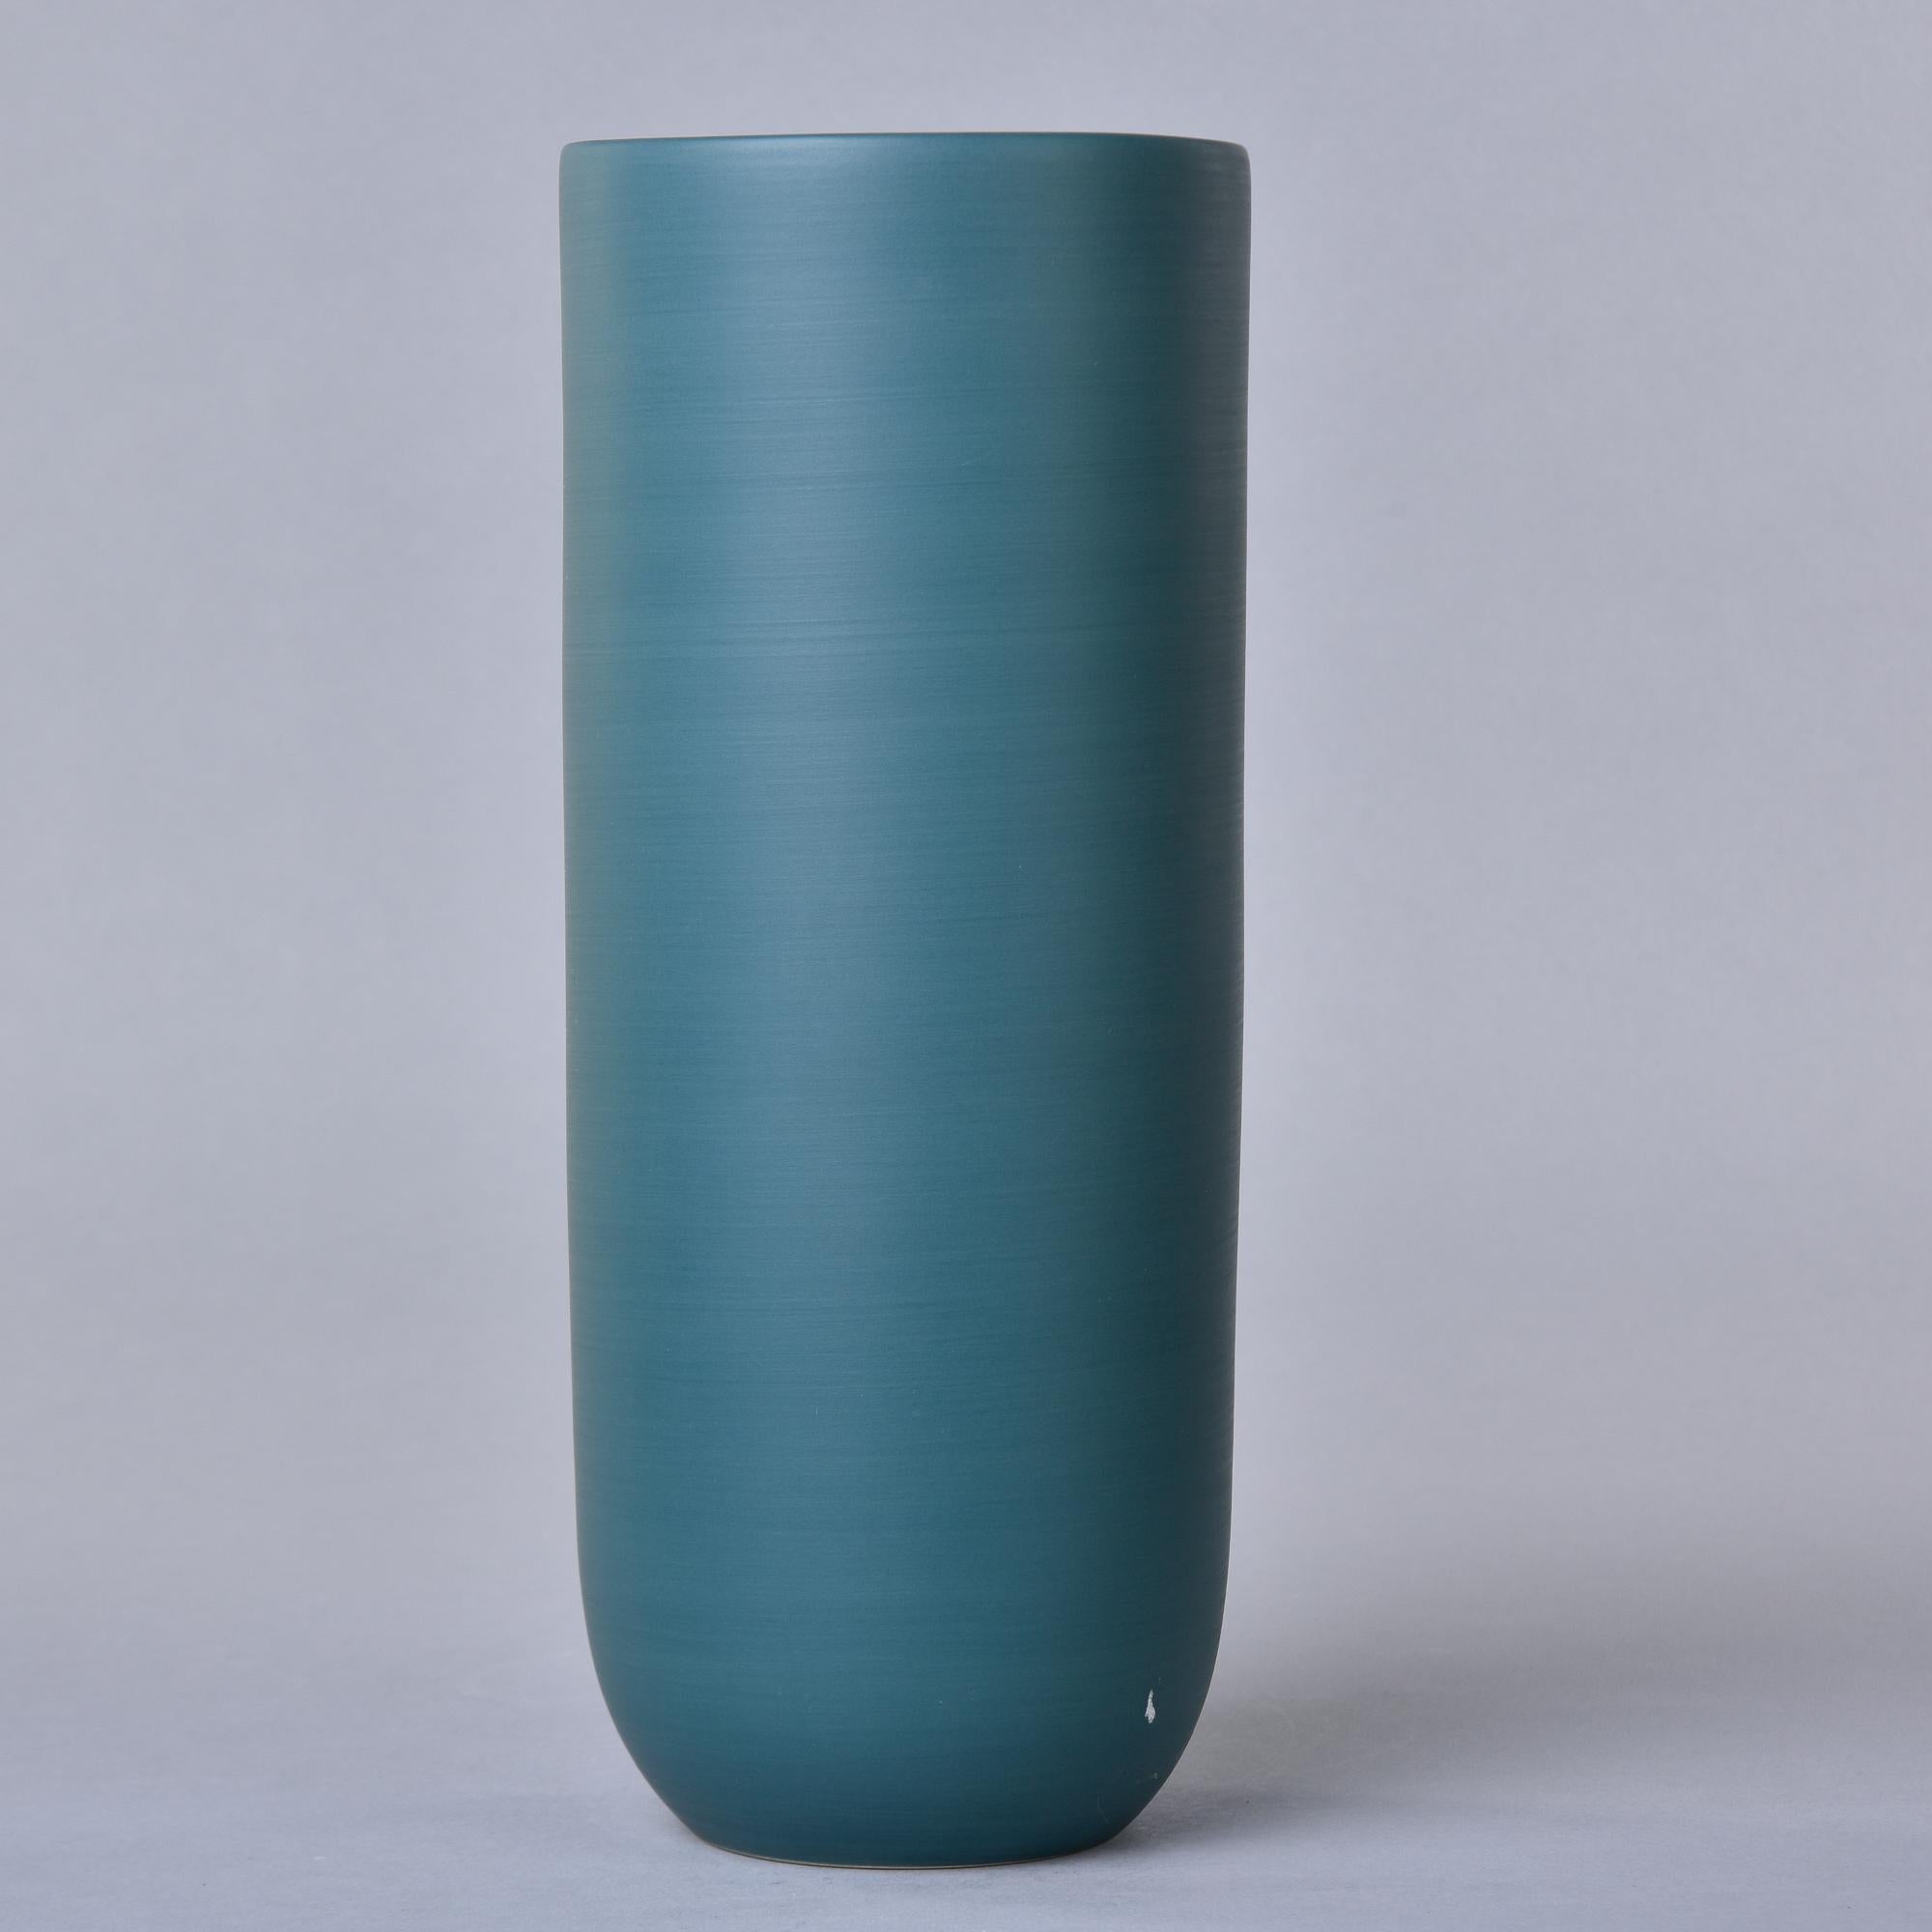 Glazed New Rina Menardi Canna 1 Vase in Mint For Sale